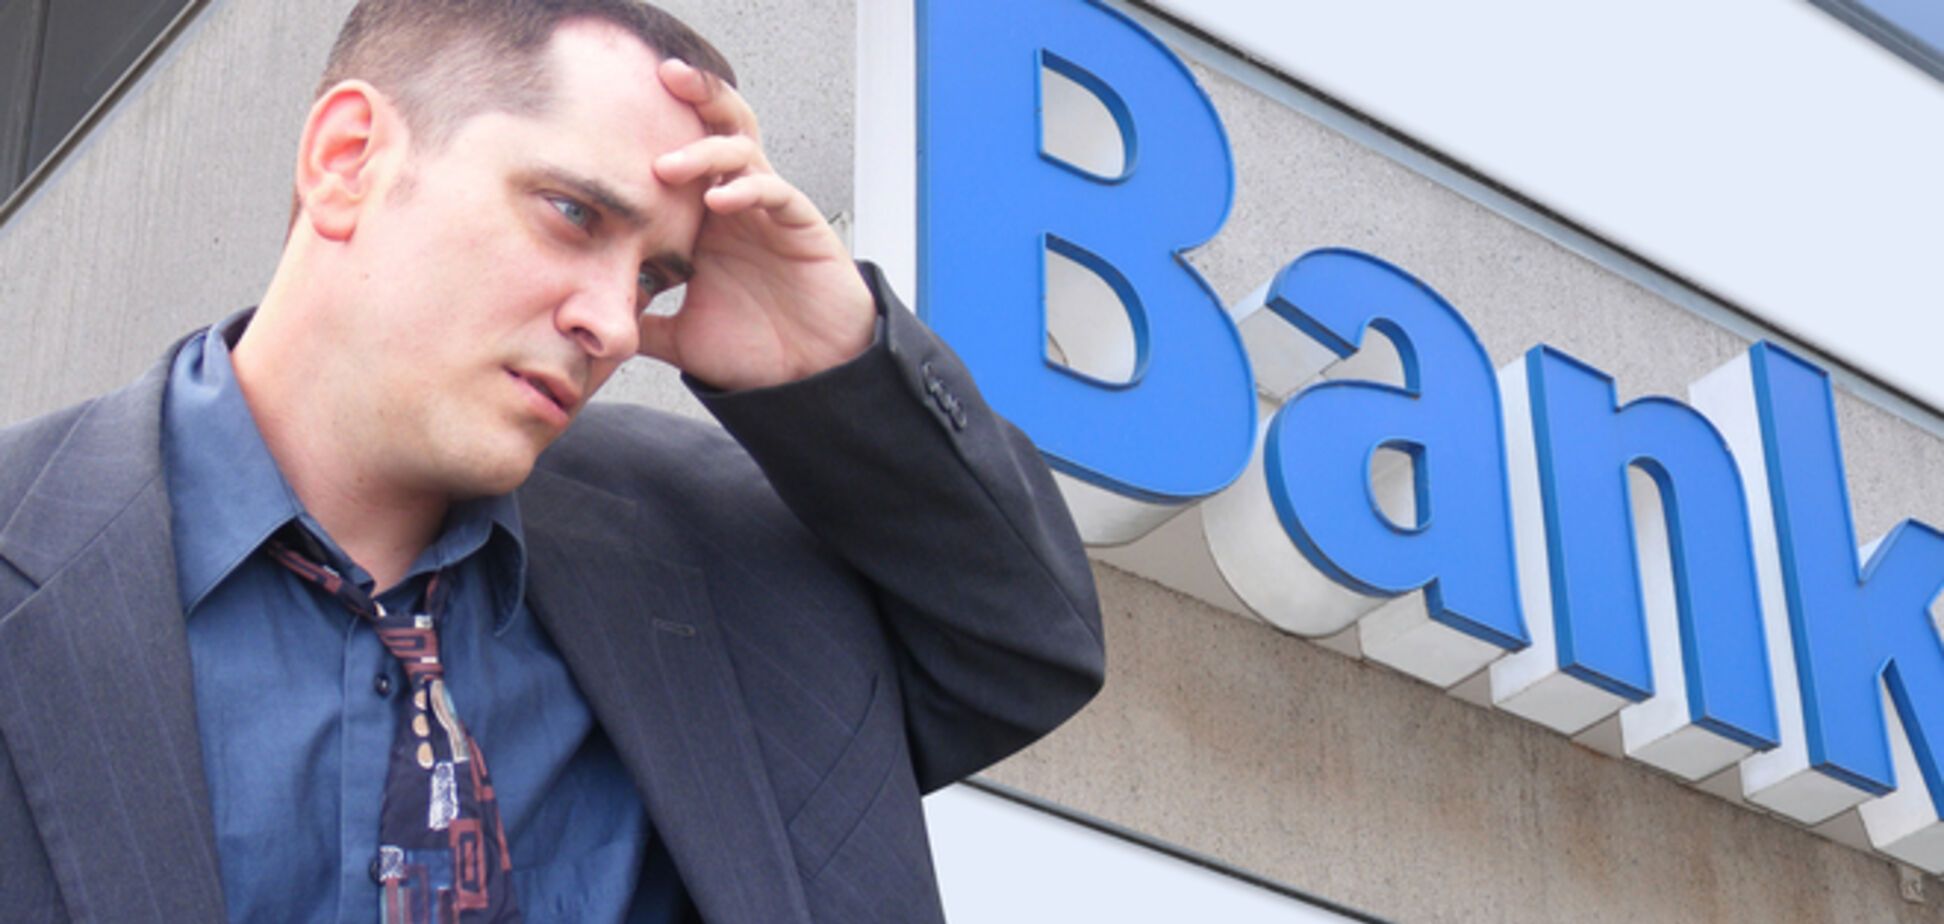 Вкладчикам банков-банкротов массово отказывают в выплате компенсаций